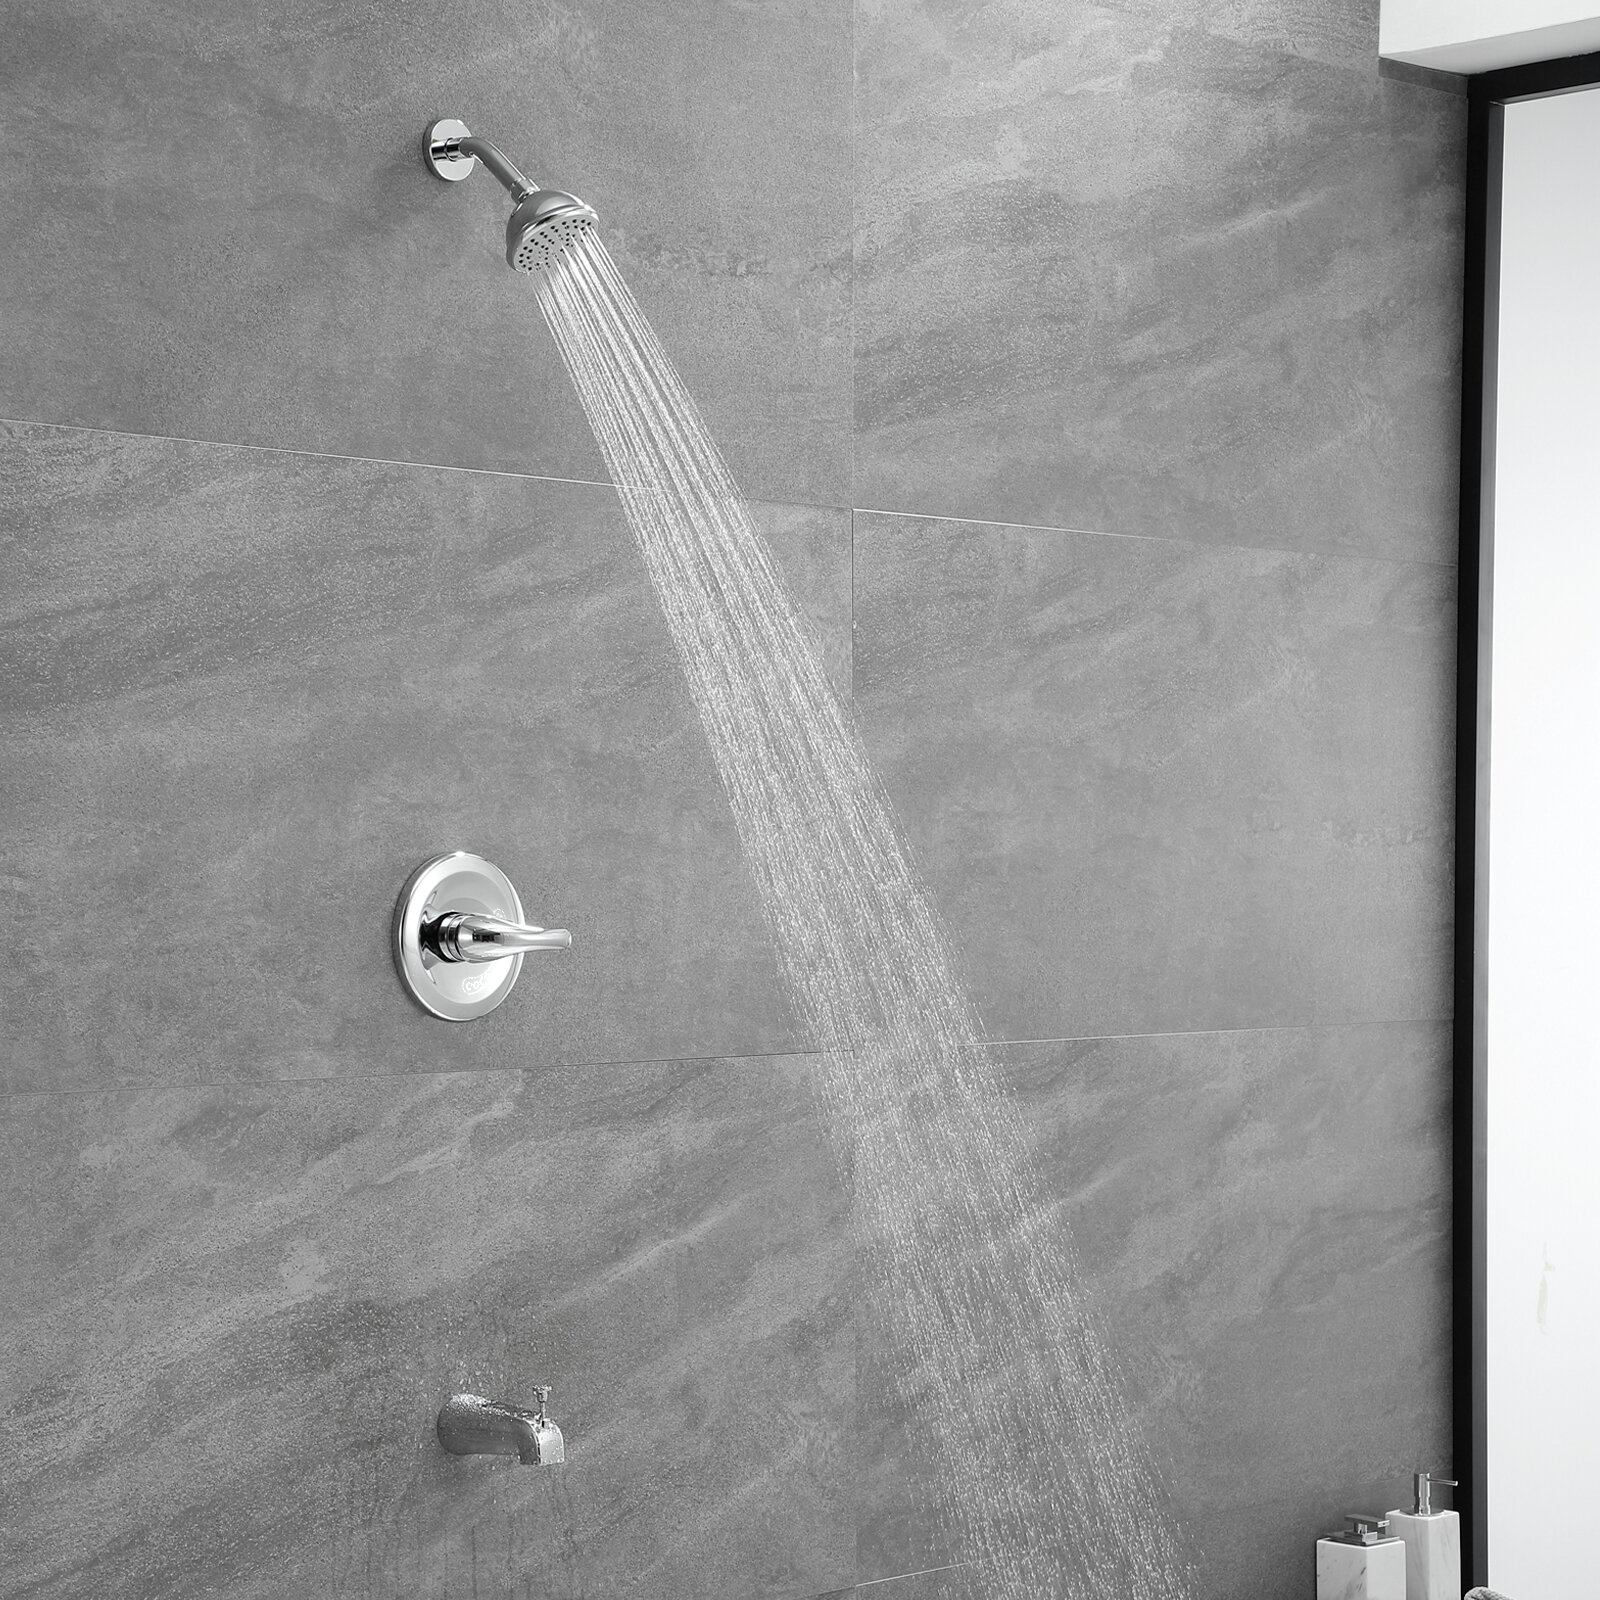 Kit di finiture per doccia in ottone cromato lucido con maniglia singola certificato Aquacubic CUPC con valvola e bocca per vasca